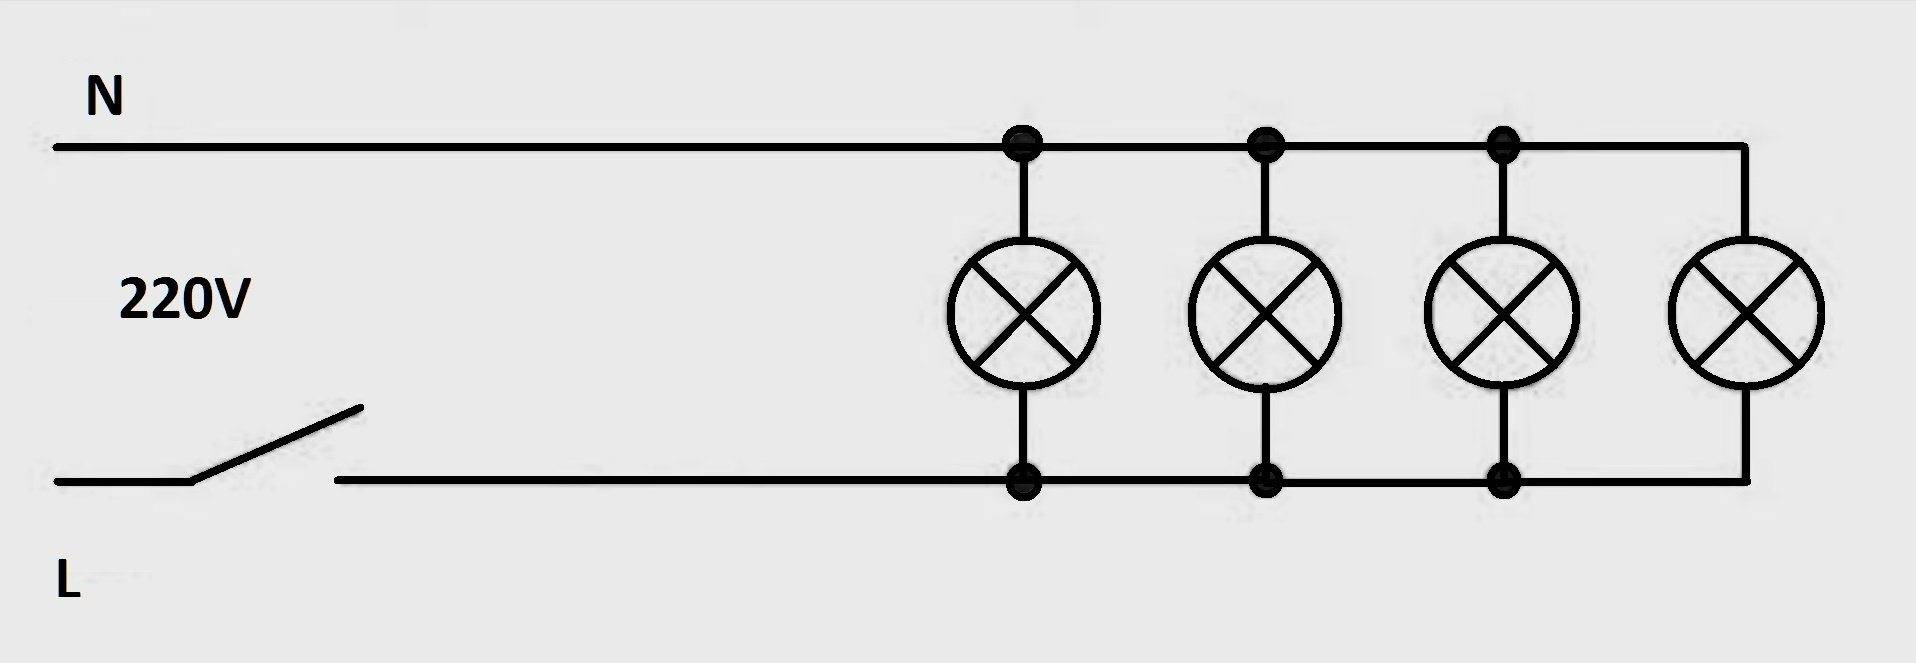 Схема параллельного подключения ламп в цепи